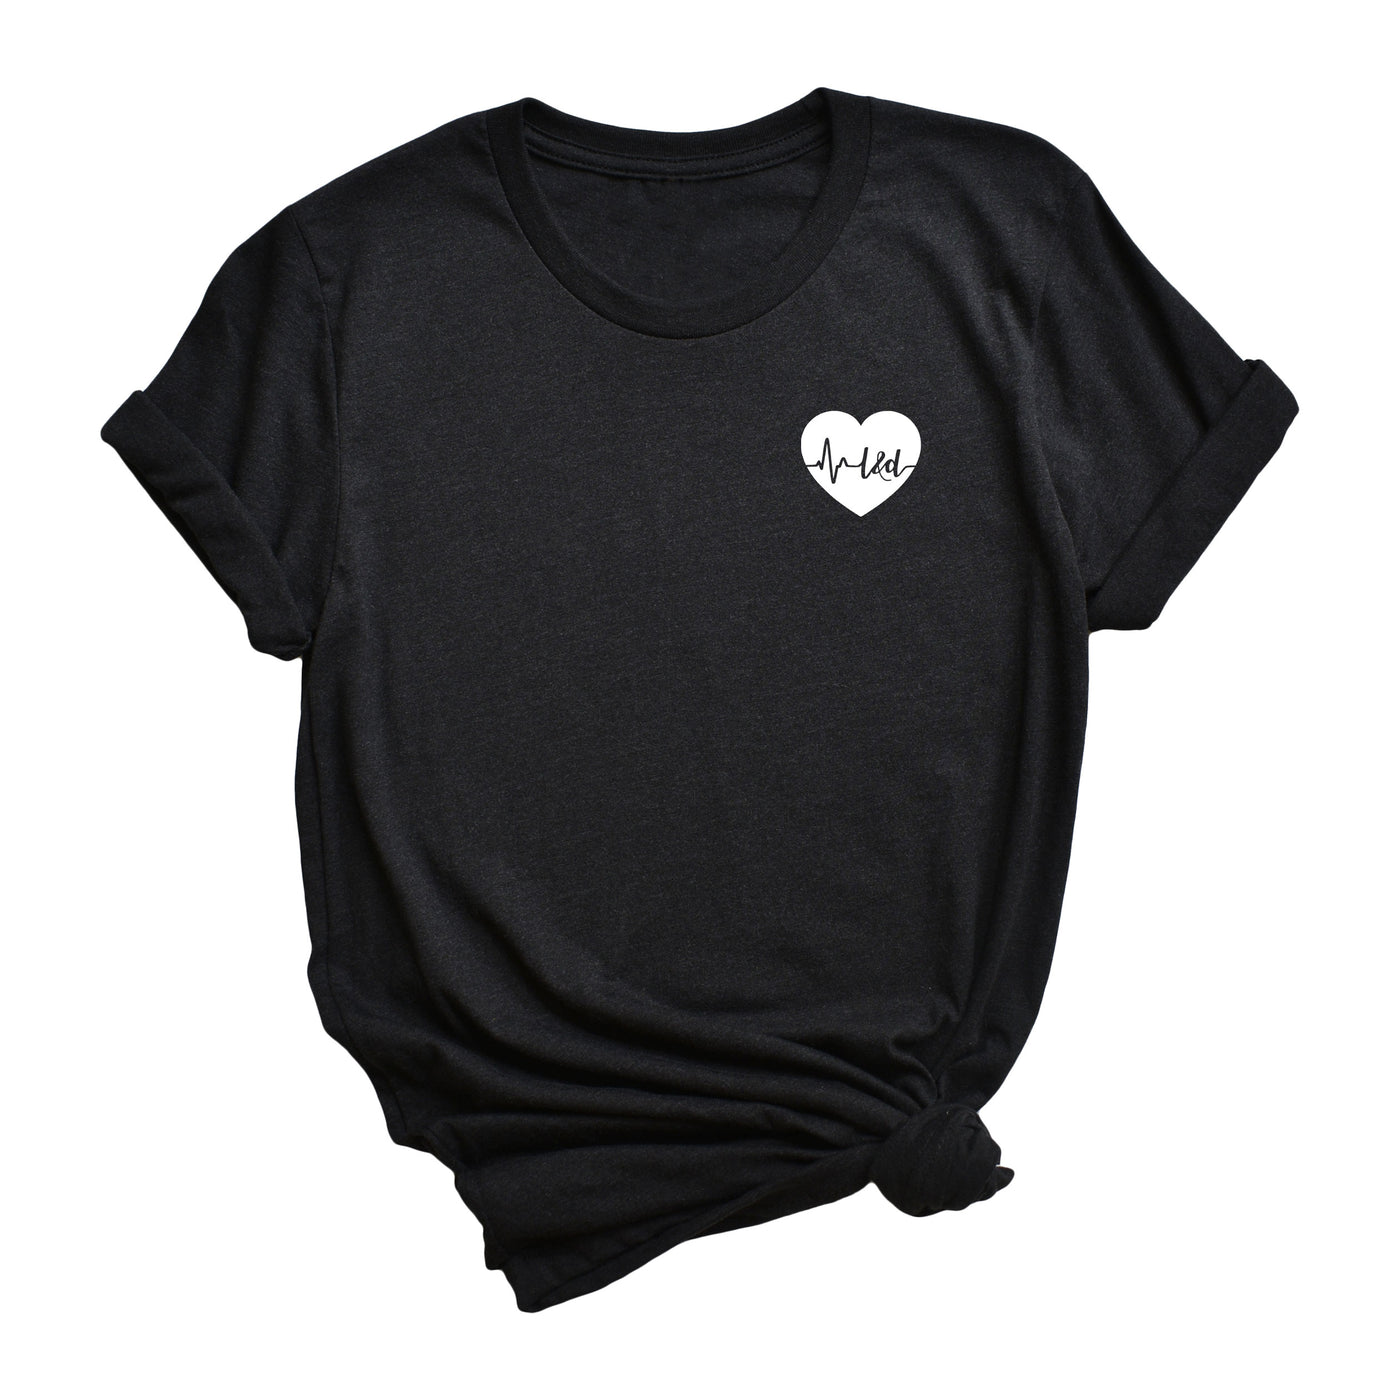 L&D ECG Heart - Shirt